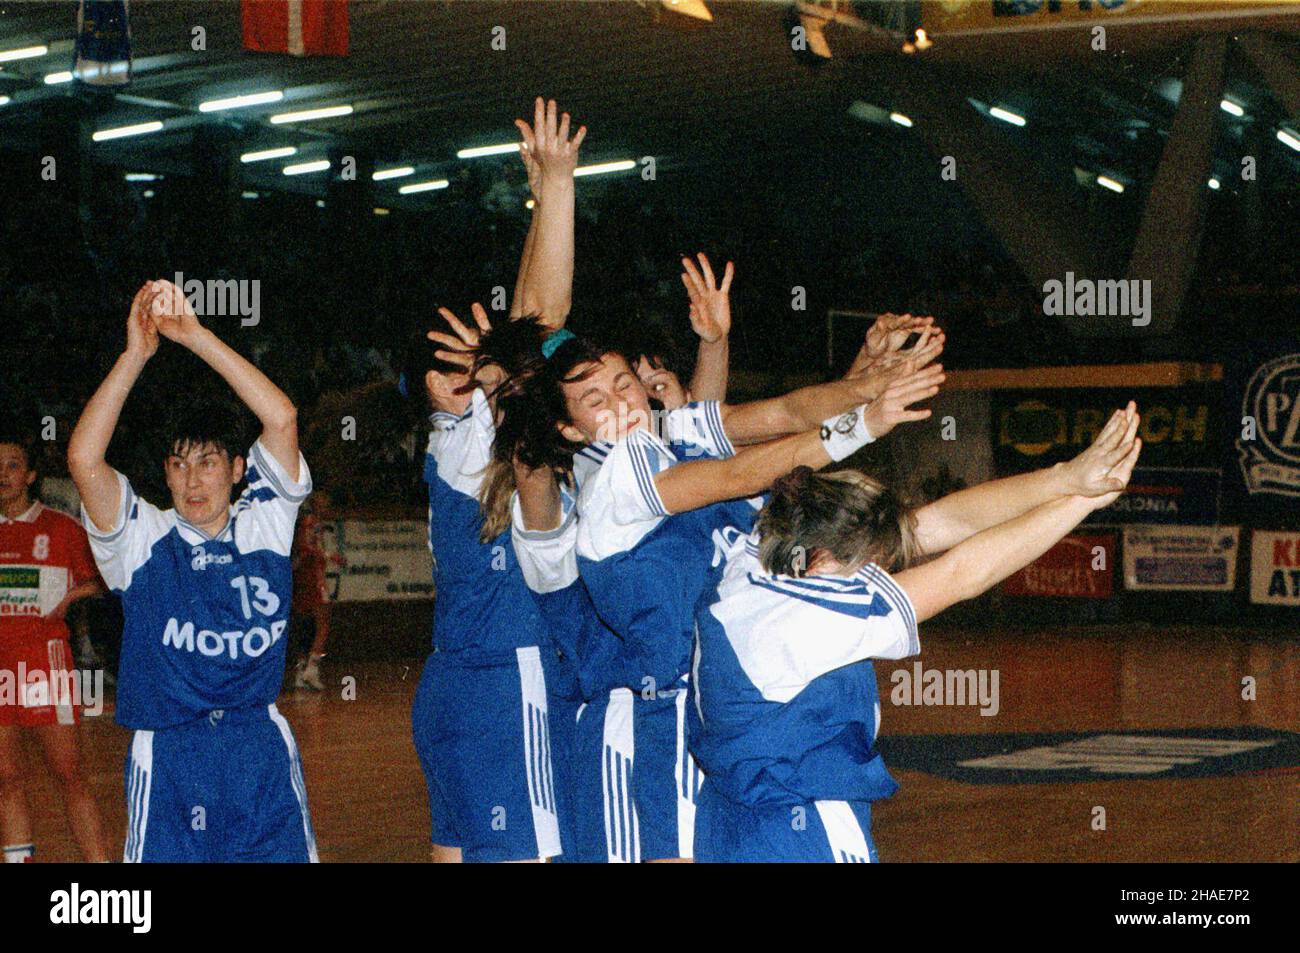 Lublin, 08.11.1997. Mecz w lidze mistrzów pi³ki rêcznej kobiet 'Montex' Lublin - 'Motor' Zaporo¿e (niebieskie stroje). (mr) PAP/Miros³aw Trembecki     Lublin, 08.11.1997. Women handball champions league. Montex Lublin vs. Motor Zaporoze (blue outfits). (mr) PAP/Miros³aw Trembecki Stock Photo